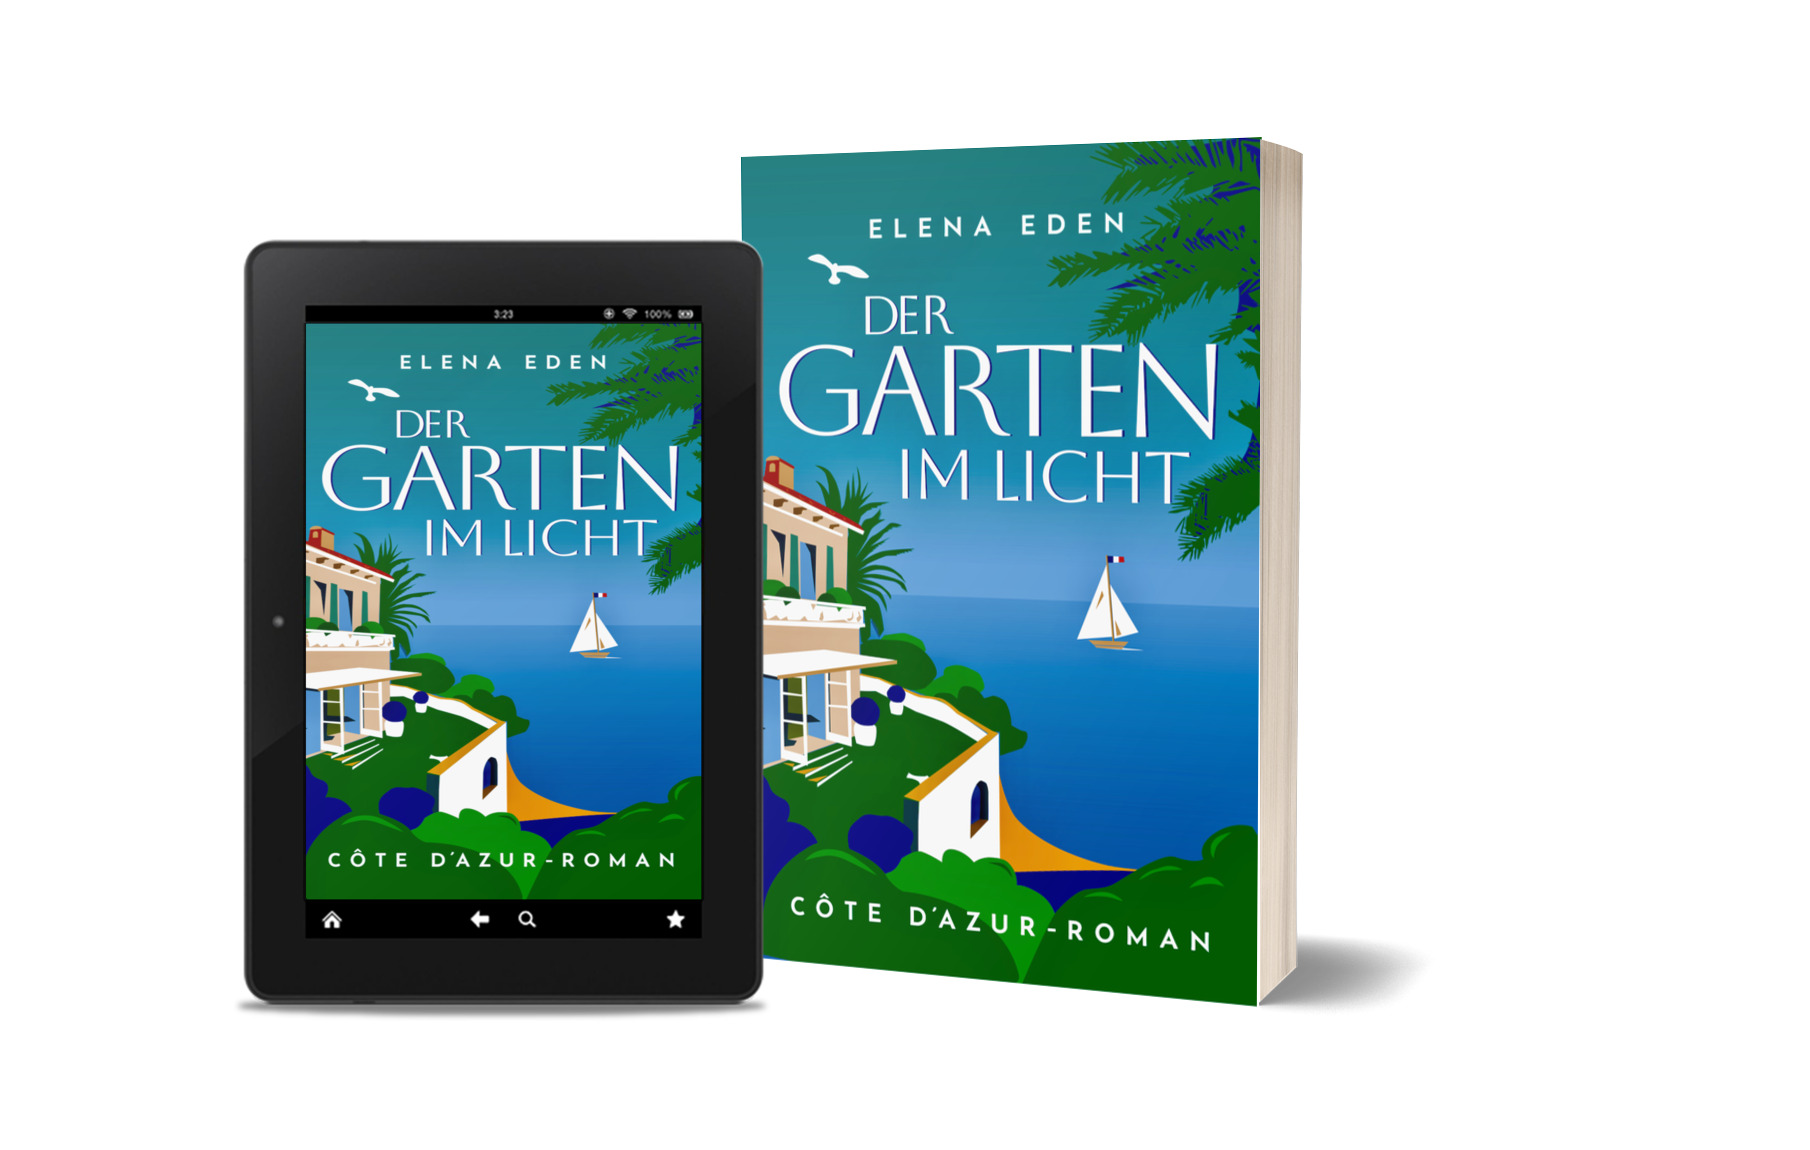 Der Garten im Licht eBook-Cover und Buchtitel von ElenaEden